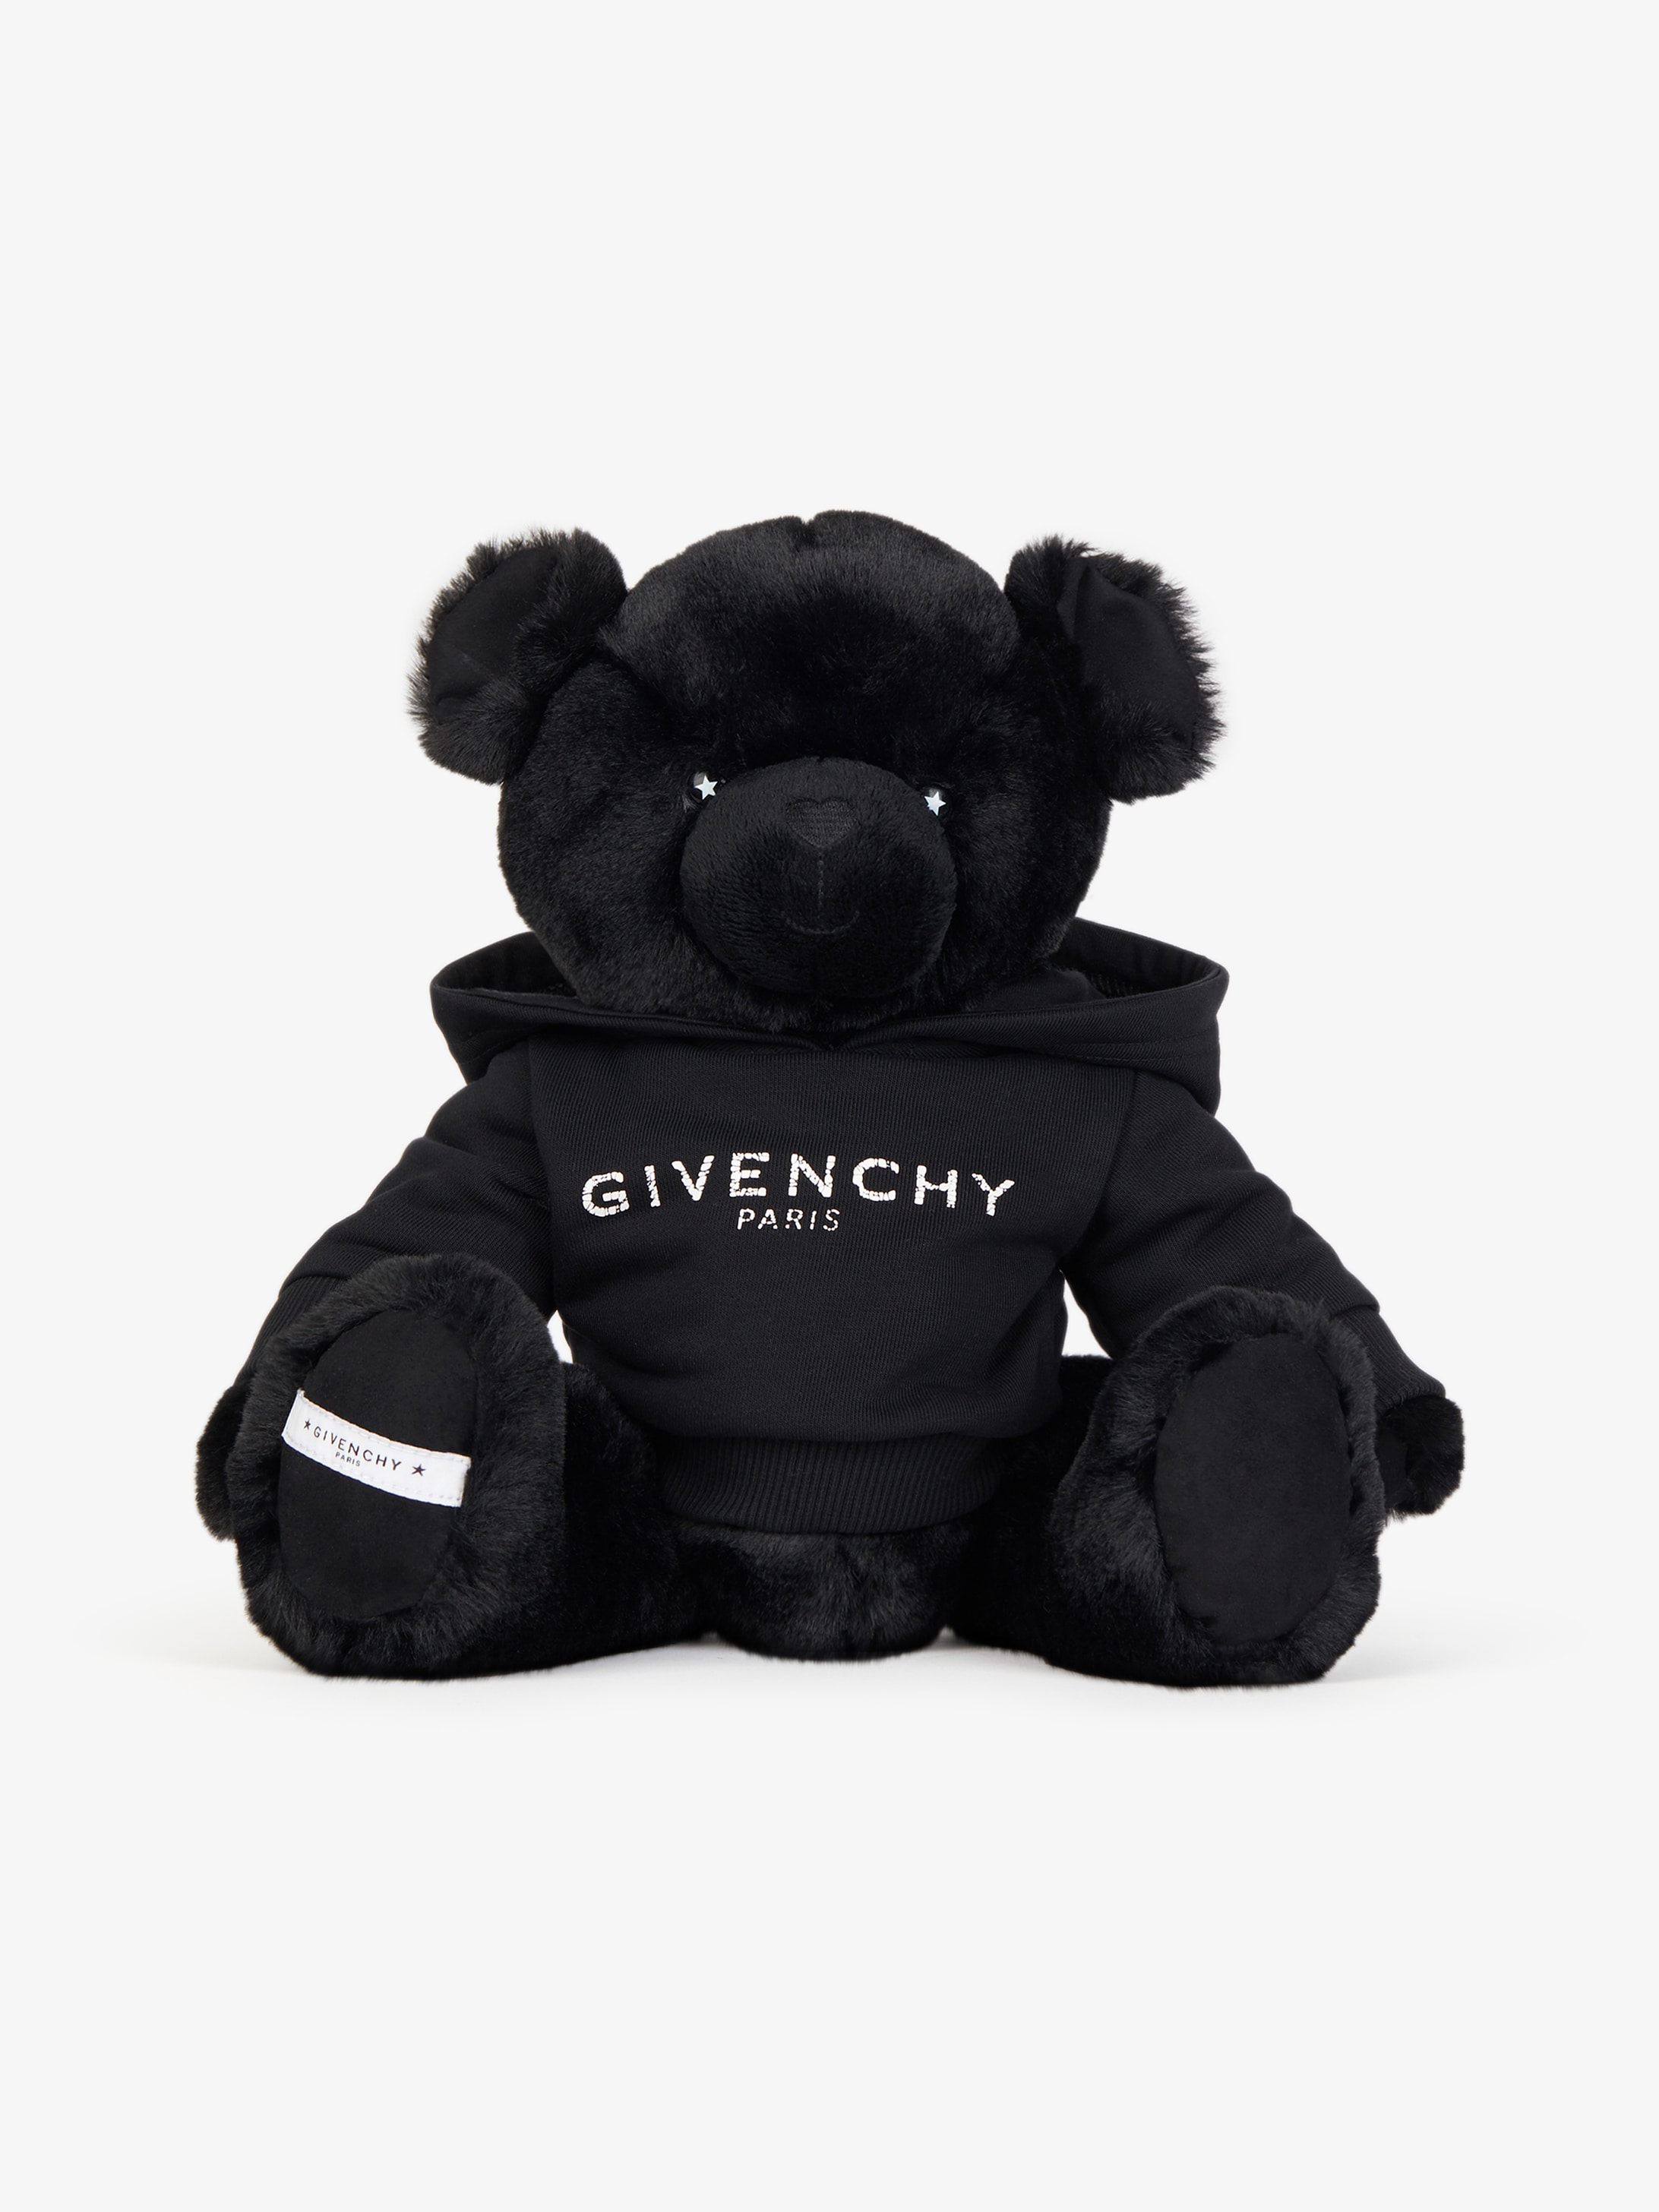 givenchy paris teddy bear